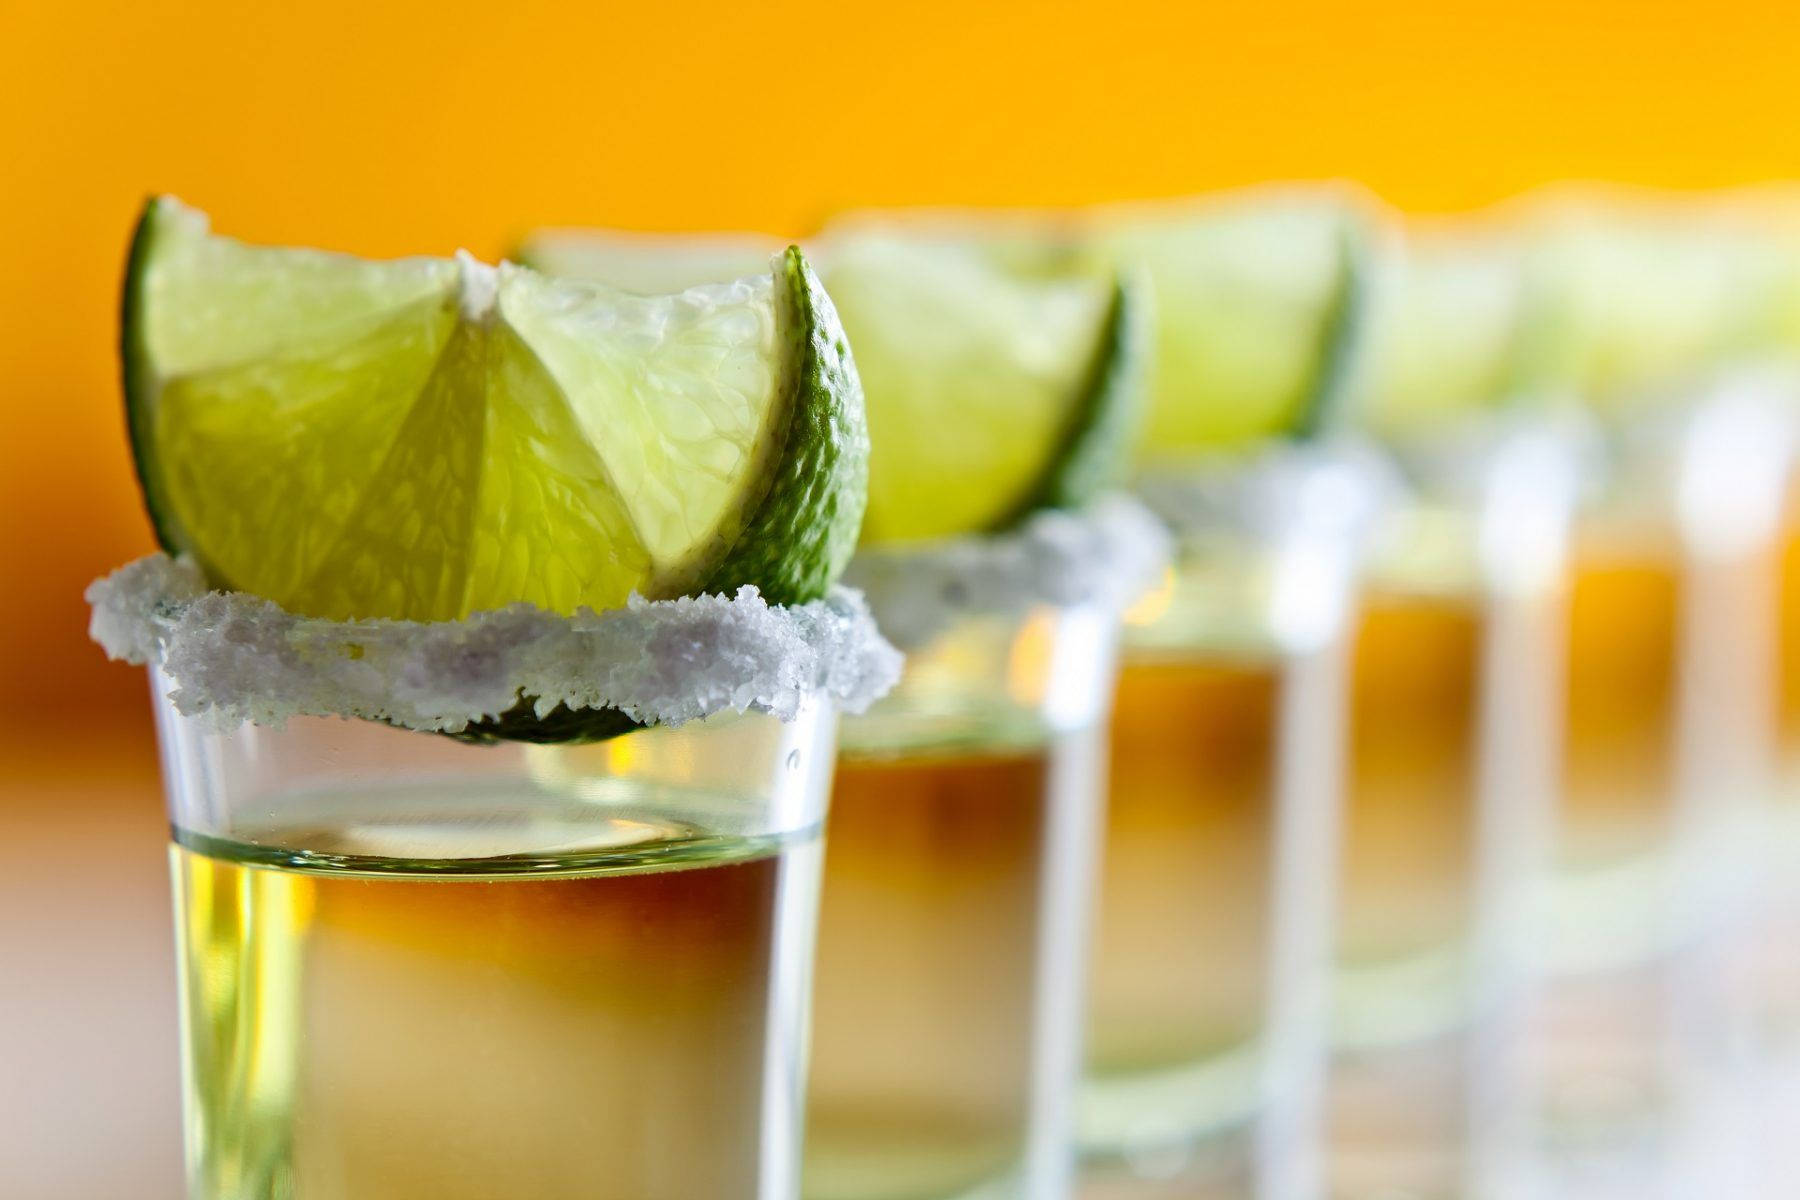 Reihevon Tequila-gläsern Mit Limettenscheiben Wallpaper